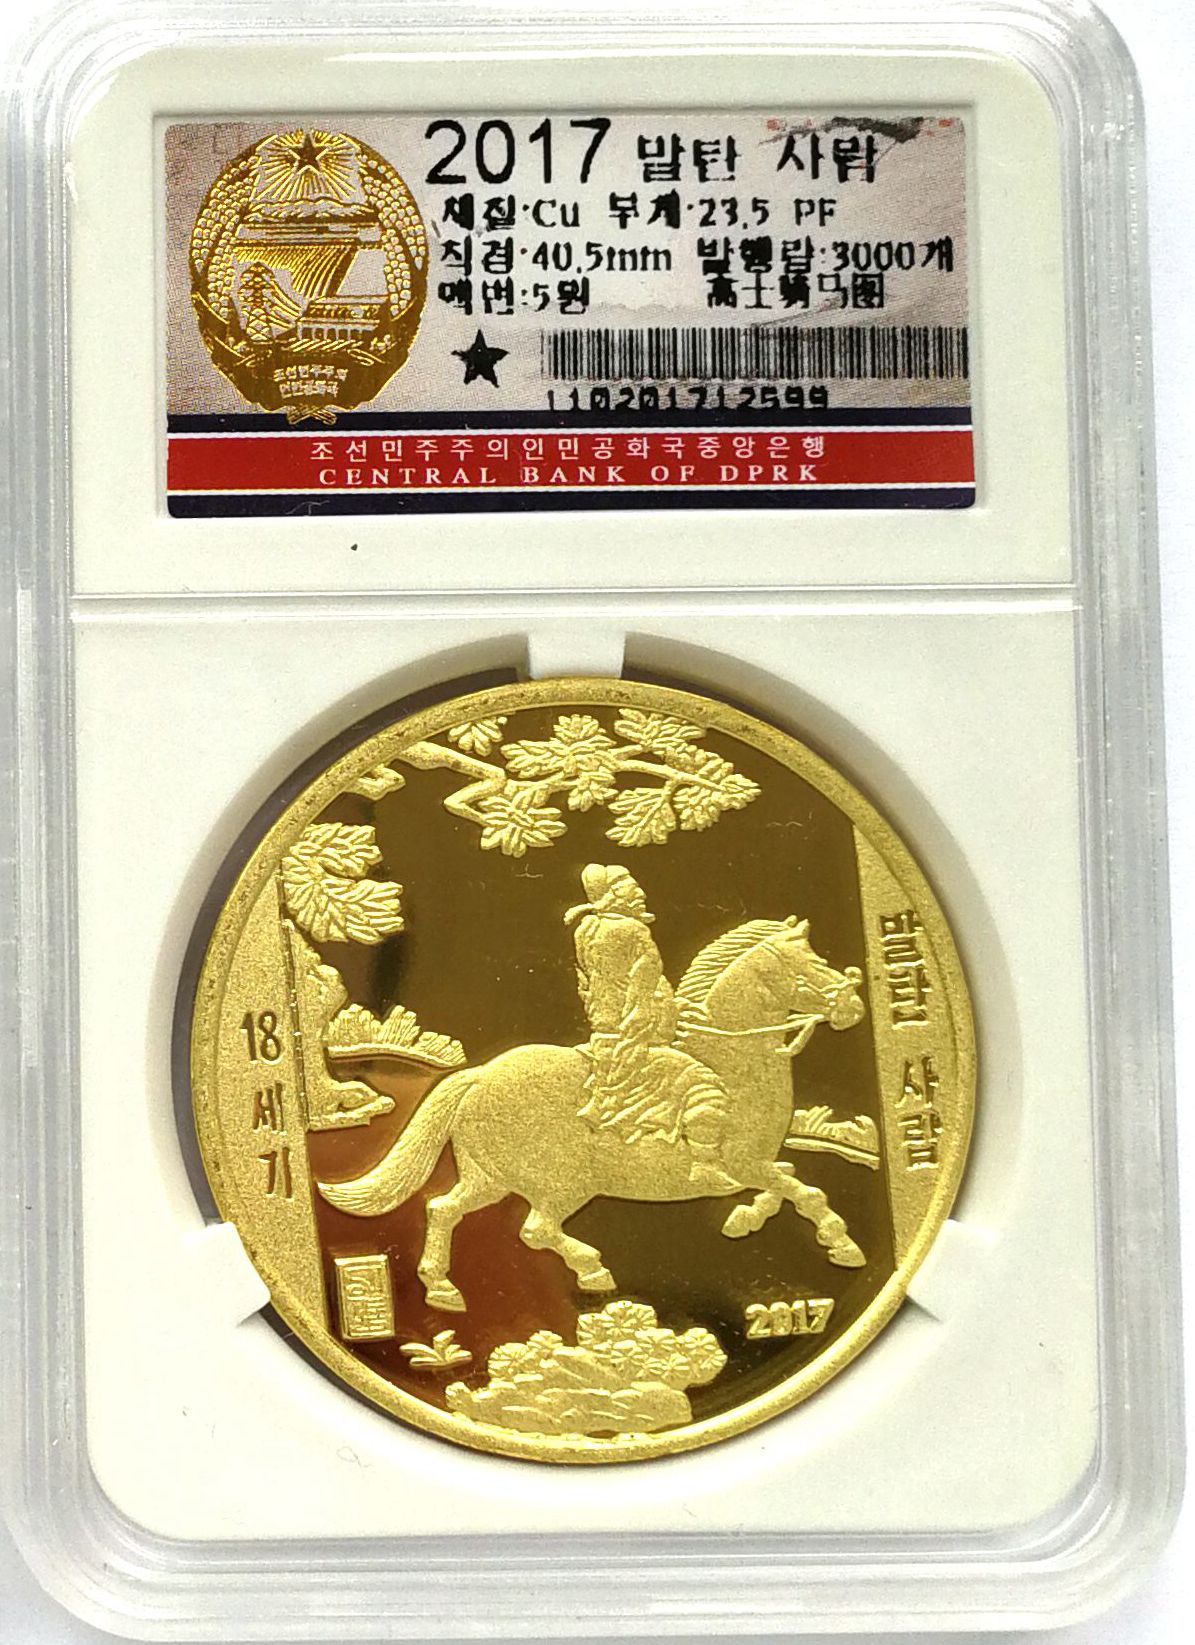 L3213, Korea Painting Coin "Official Horse Riding", Korean Grade, Brass 2017